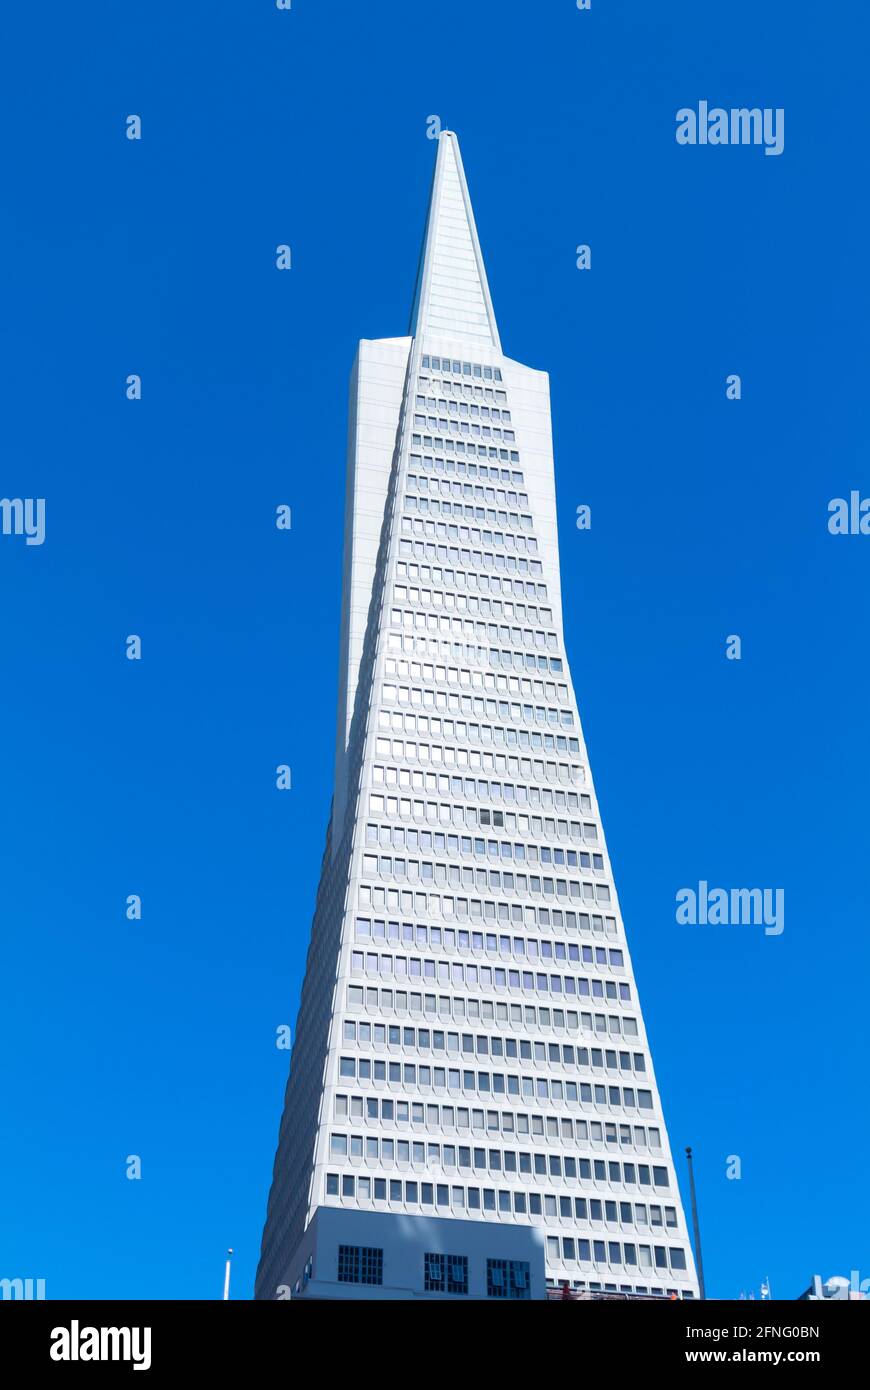 Construcción de pirámide Transamerica en el distrito financiero, San Francisco, California, Estados Unidos Foto de stock